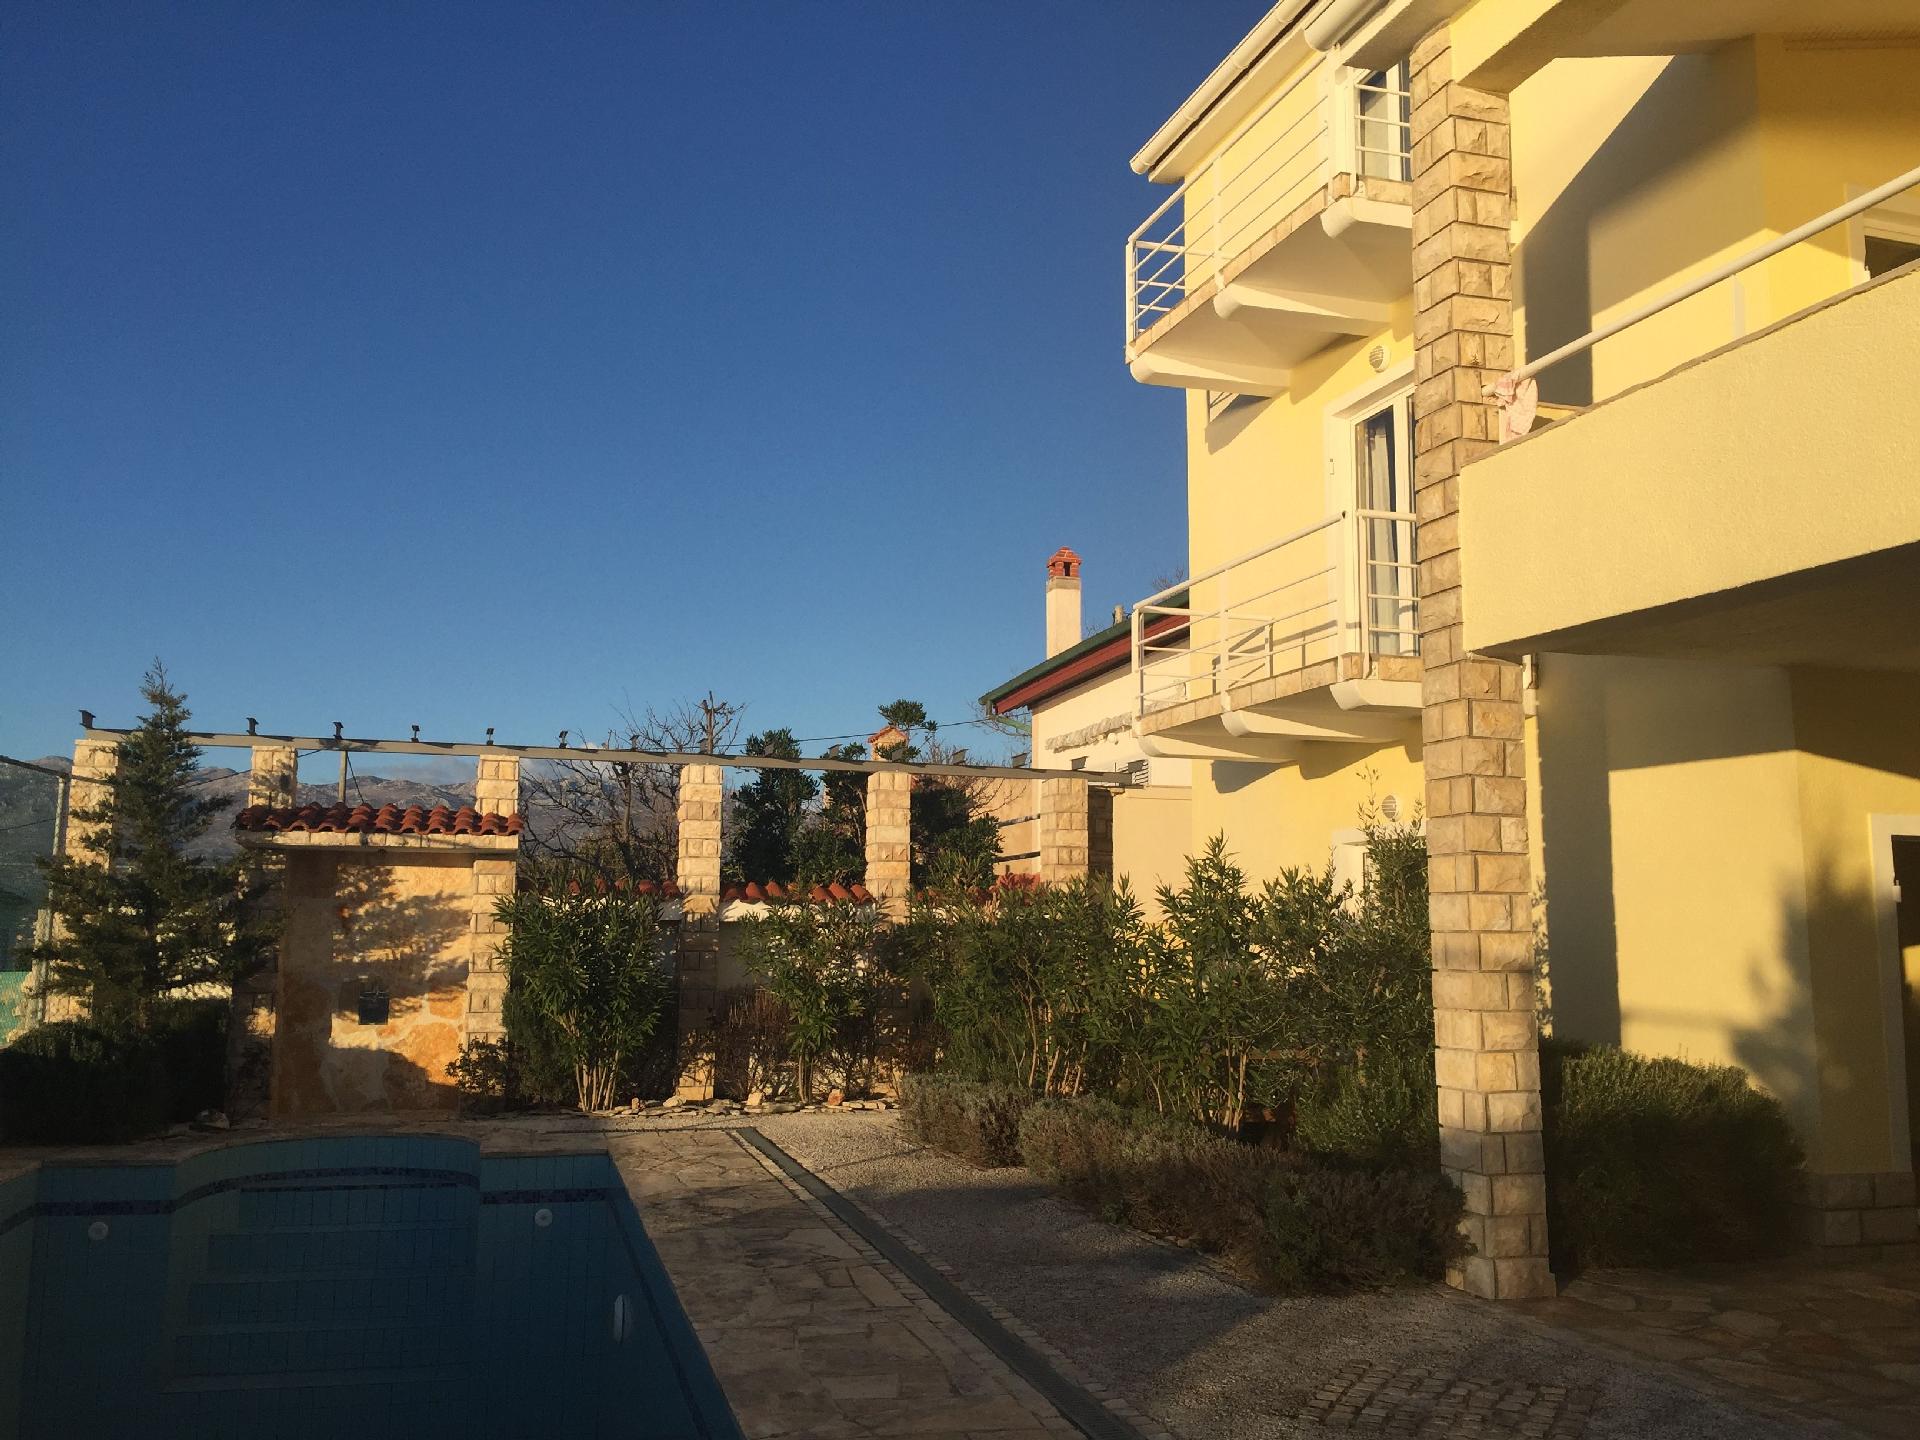 Ferienwohnung für vier Personen mit Balkon im Ferienhaus in Kroatien